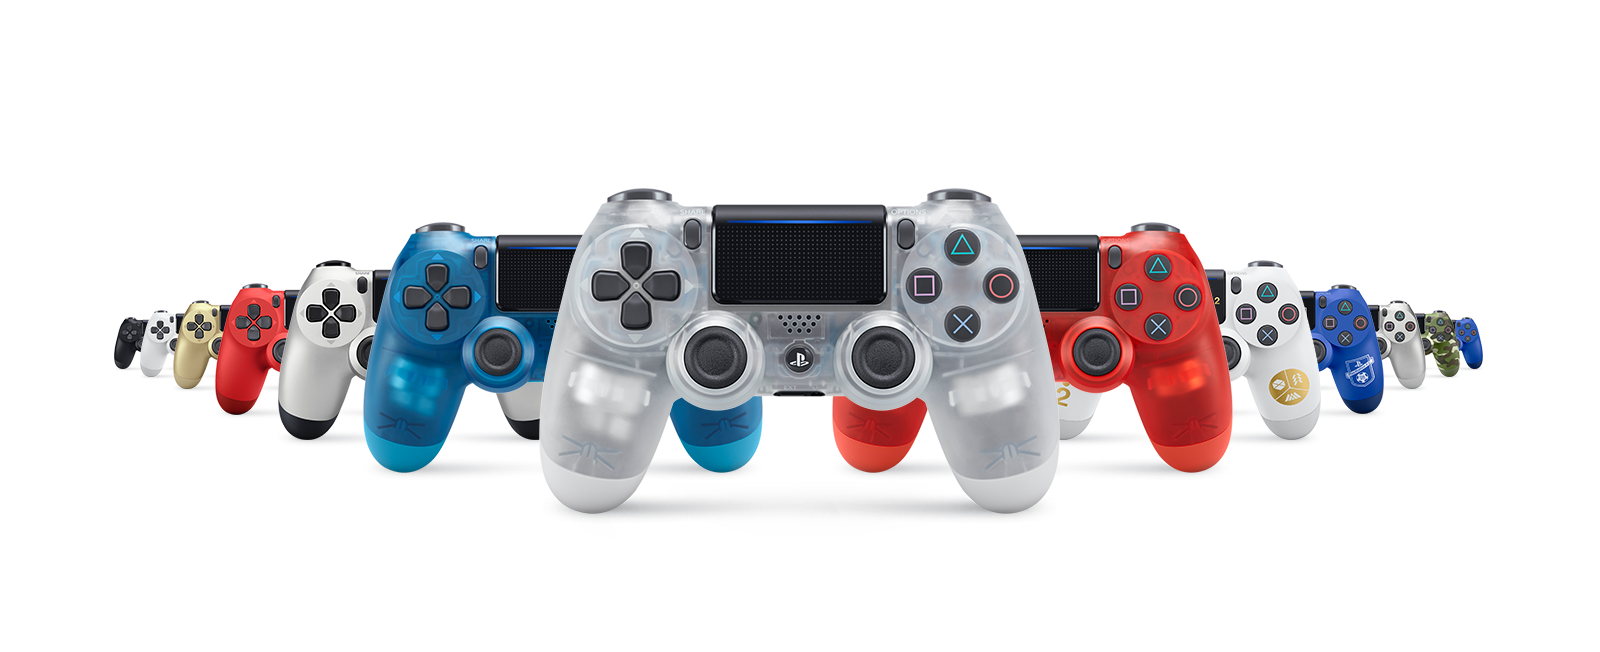 Sony vai lançar DualShock 4 translúcido inspirado em controle de PS1 01190413003406